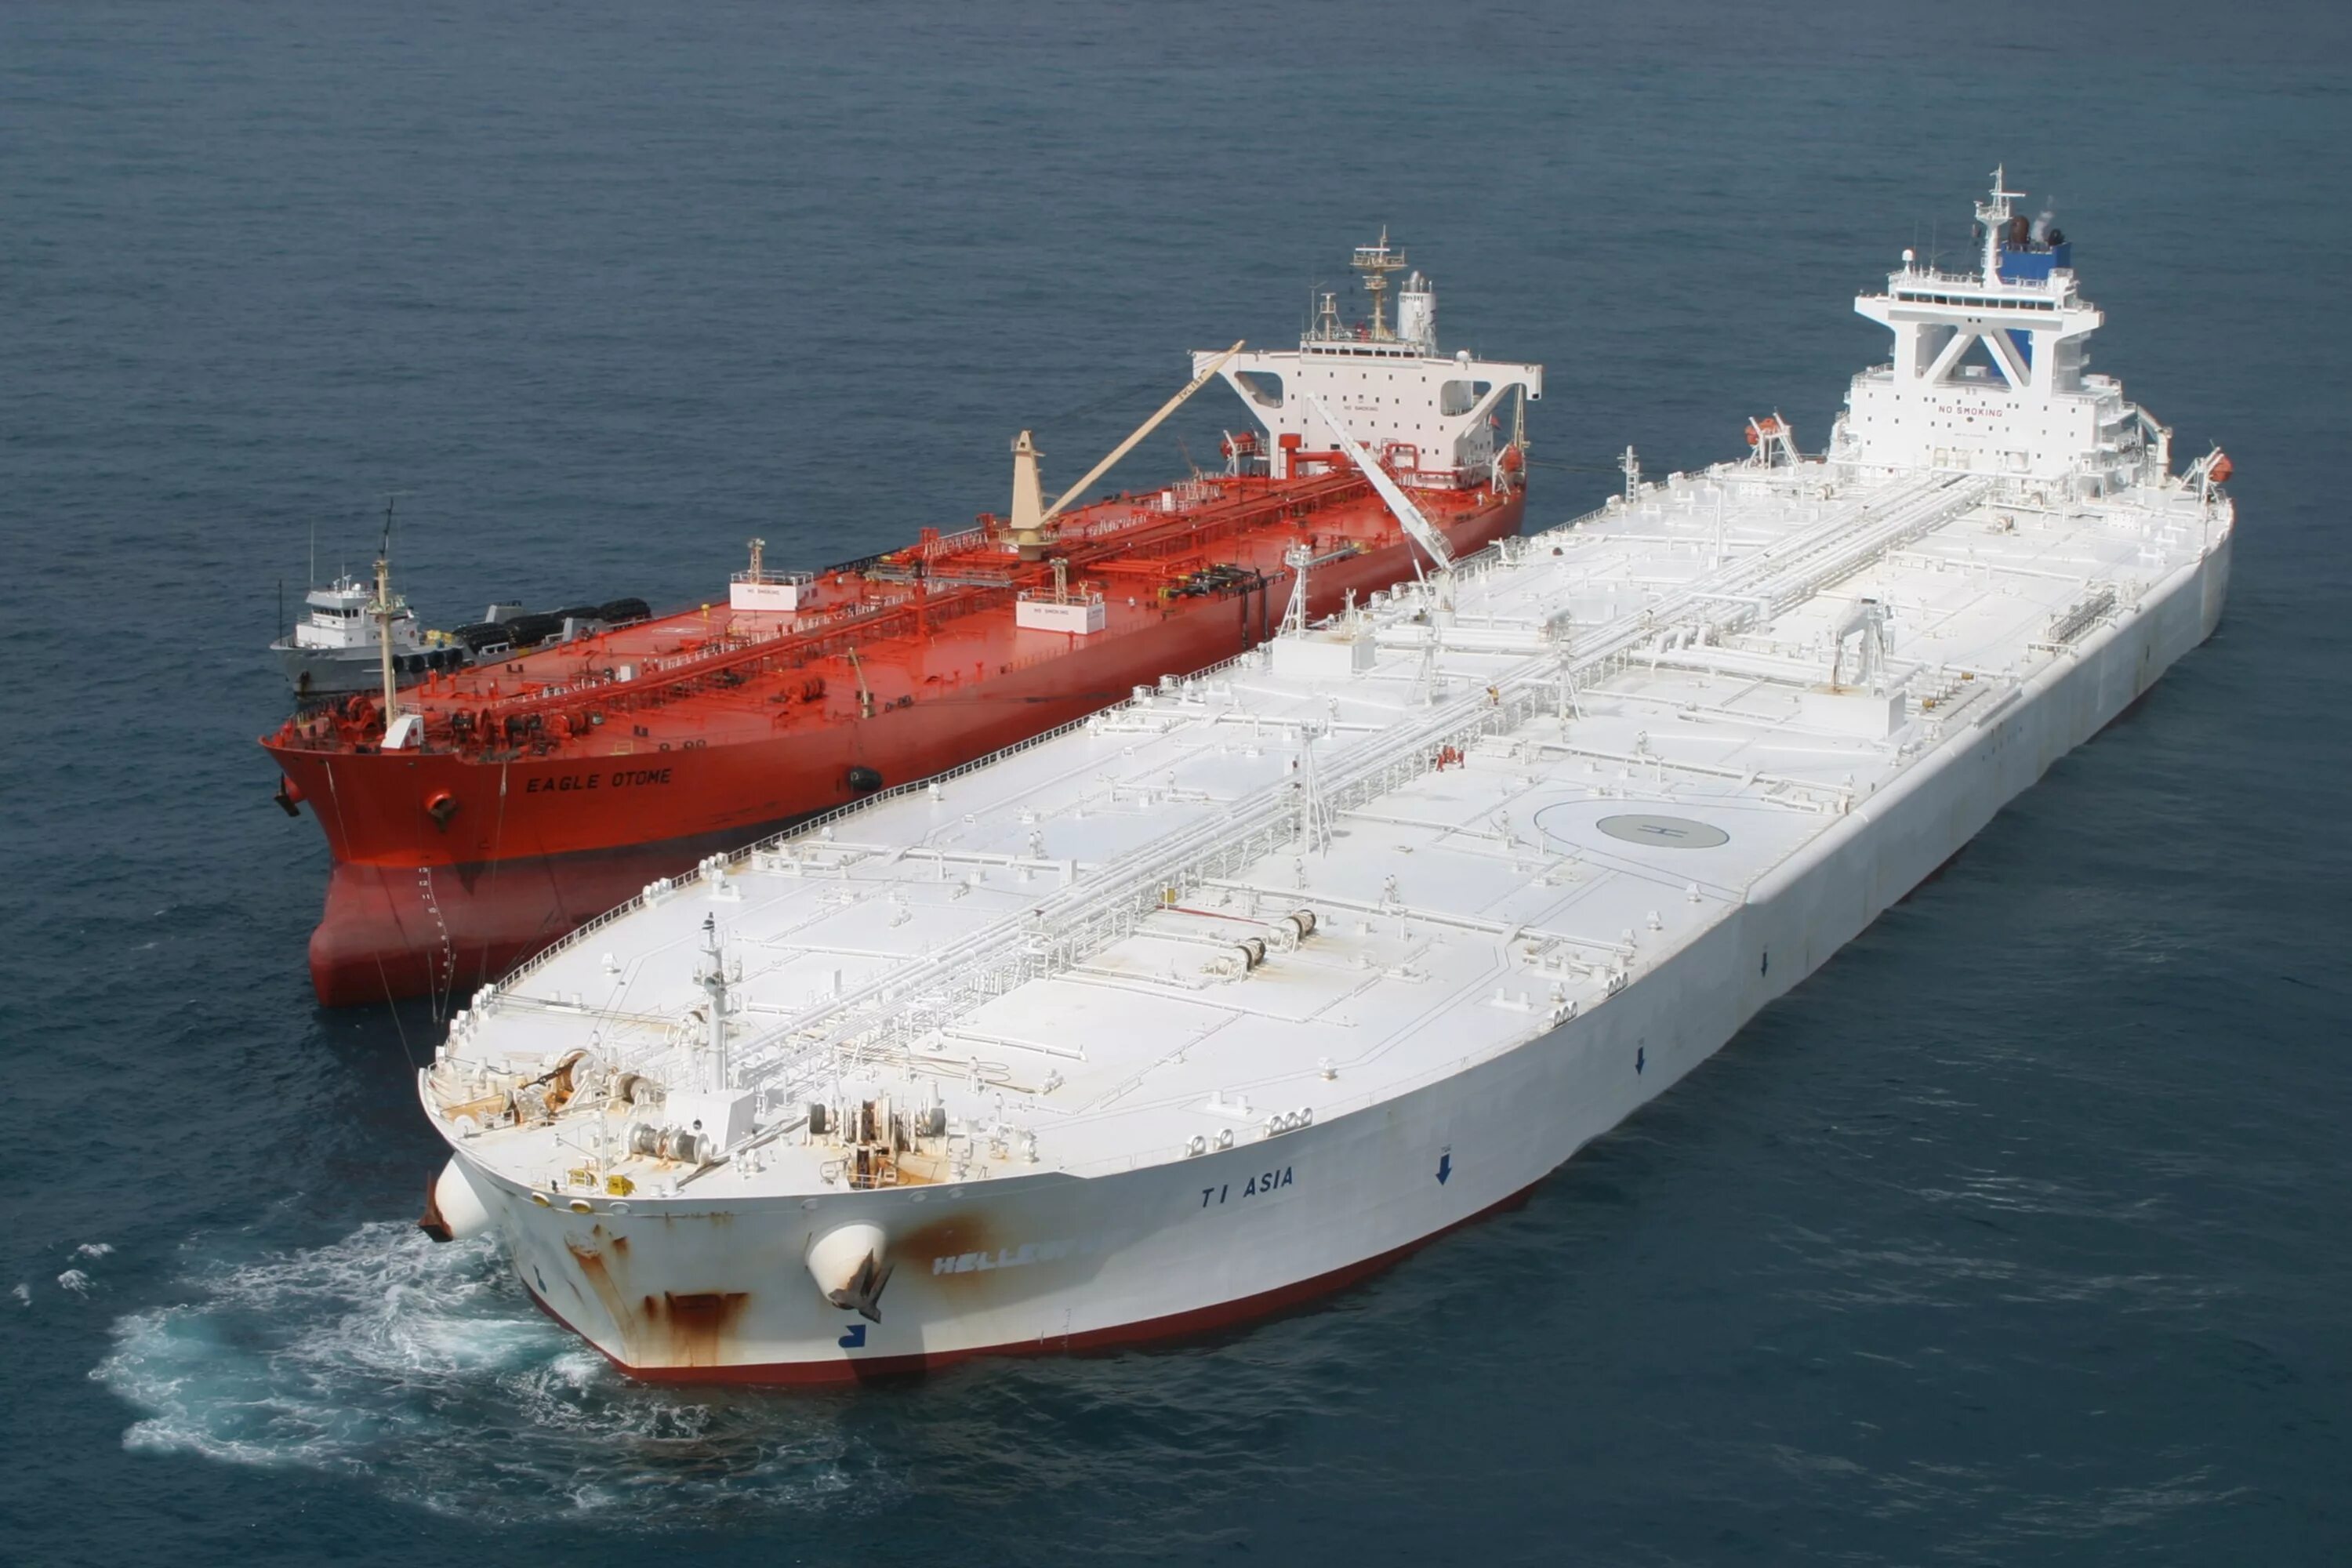 Груз на судне 5. Супертанкер Батиллус. Hellespont Fairfax танкер. Knock Nevis танкер. Самый большой нефтеналивной танкер в мире.